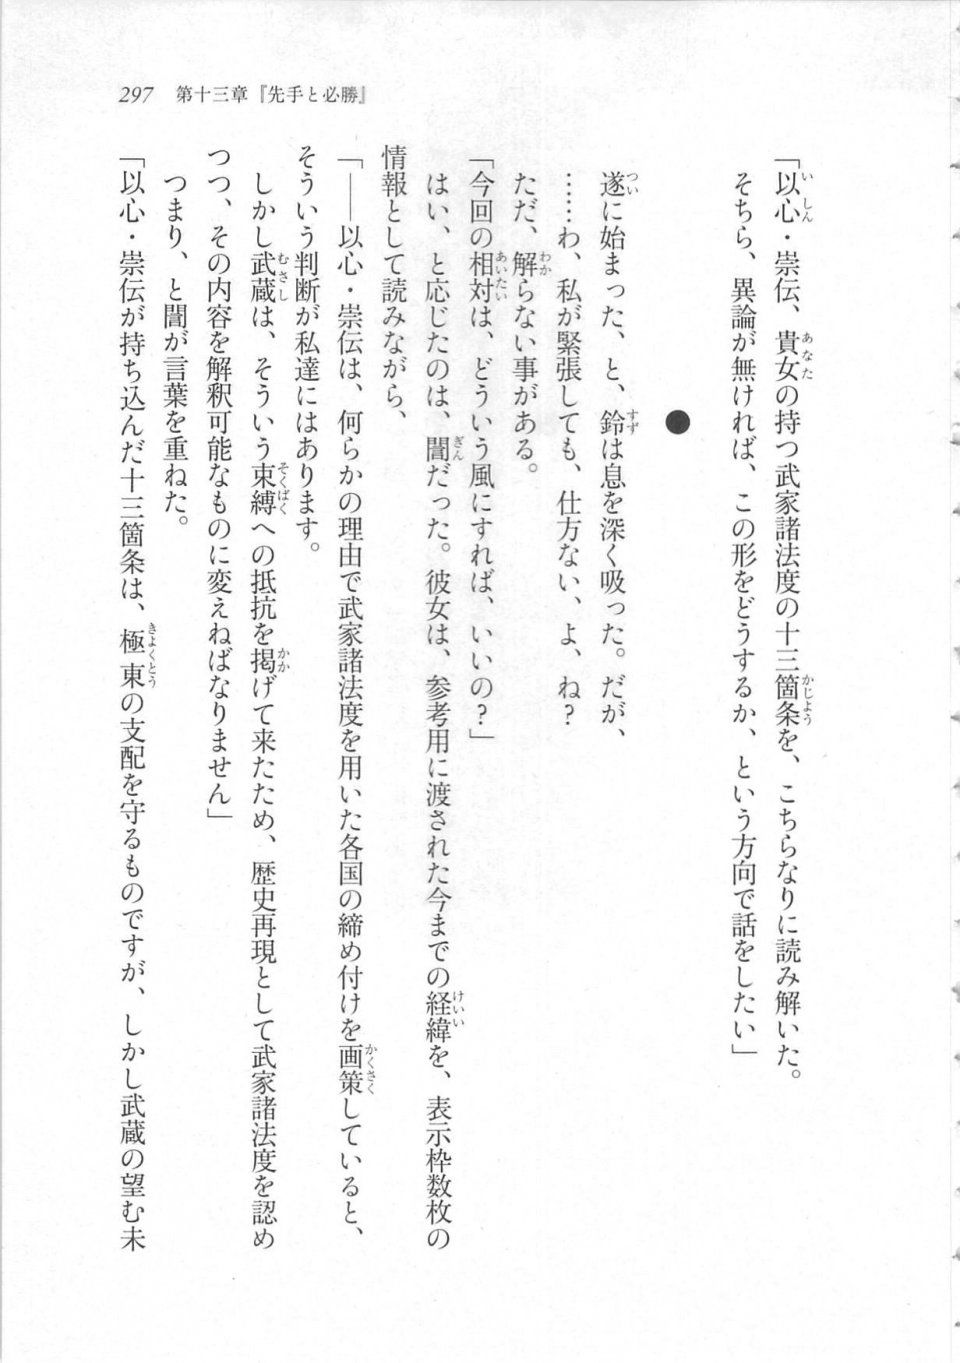 Kyoukai Senjou no Horizon LN Sidestory Vol 3 - Photo #301